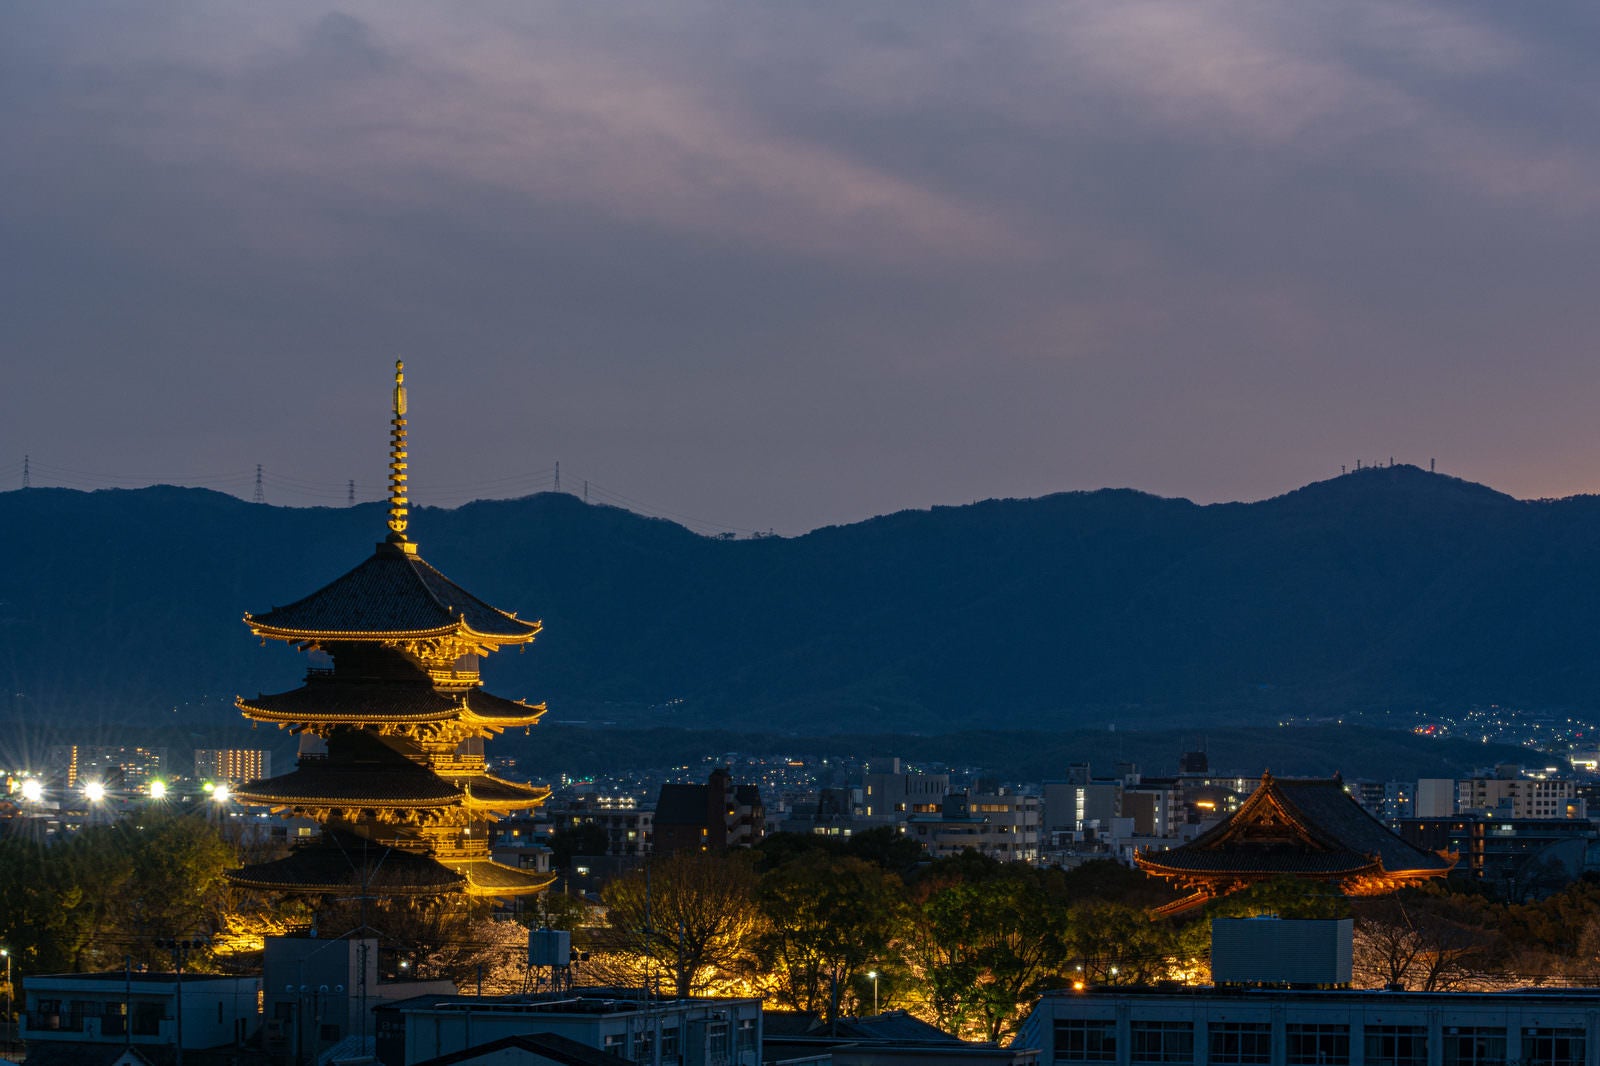 「夕暮れから夜へと変わる空の下ライトアップされた東寺五重塔」の写真